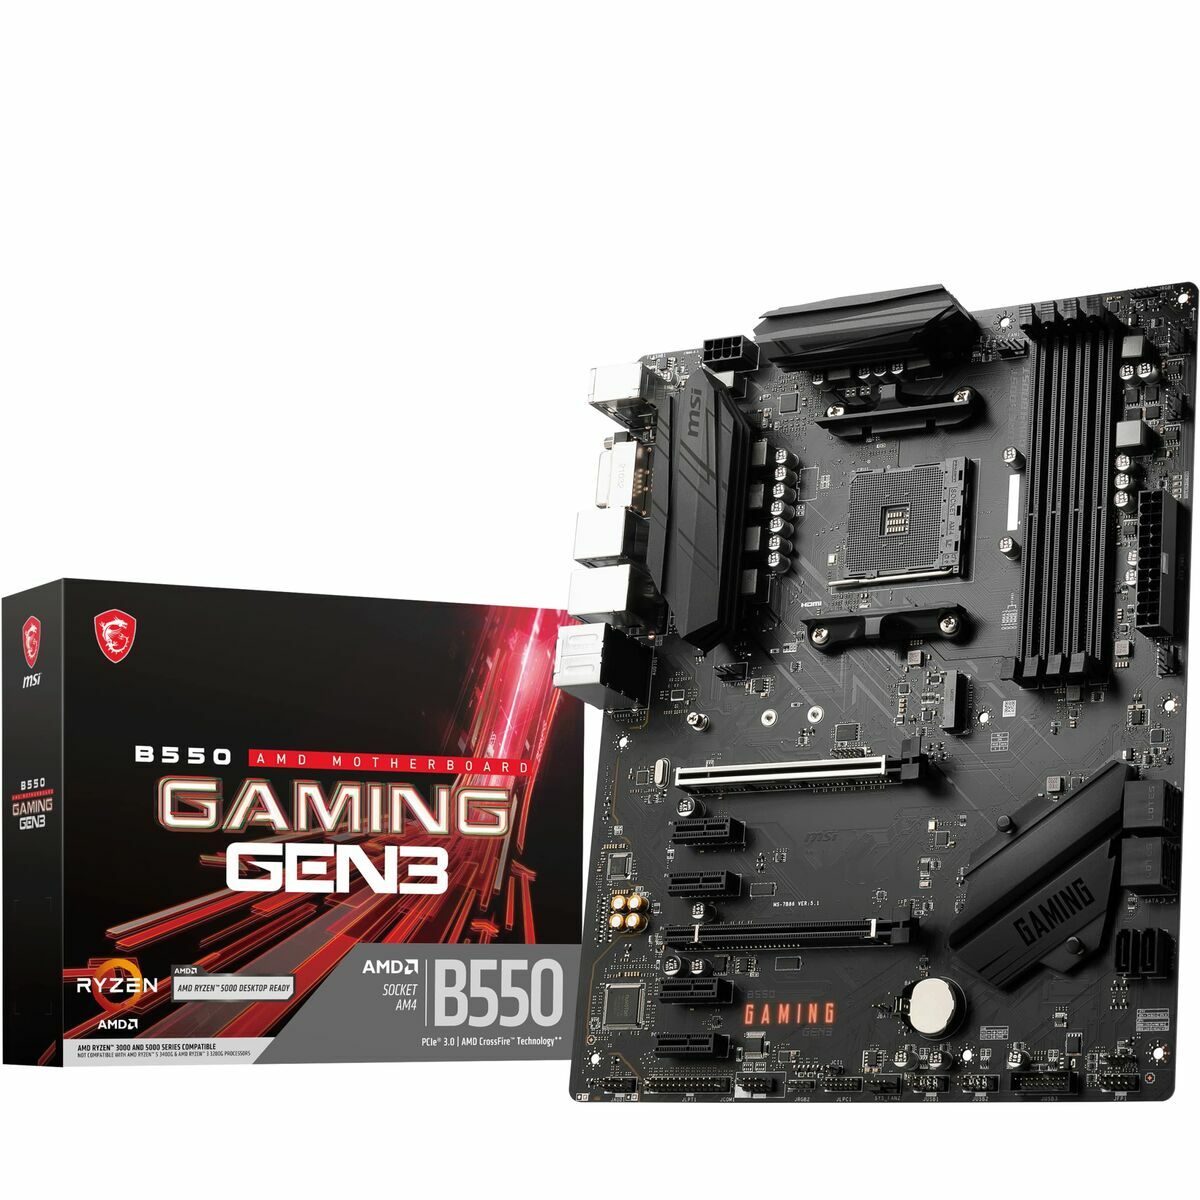 Scheda Madre MSI B550 GAMING GEN3 AMD B550 AMD AMD AM4